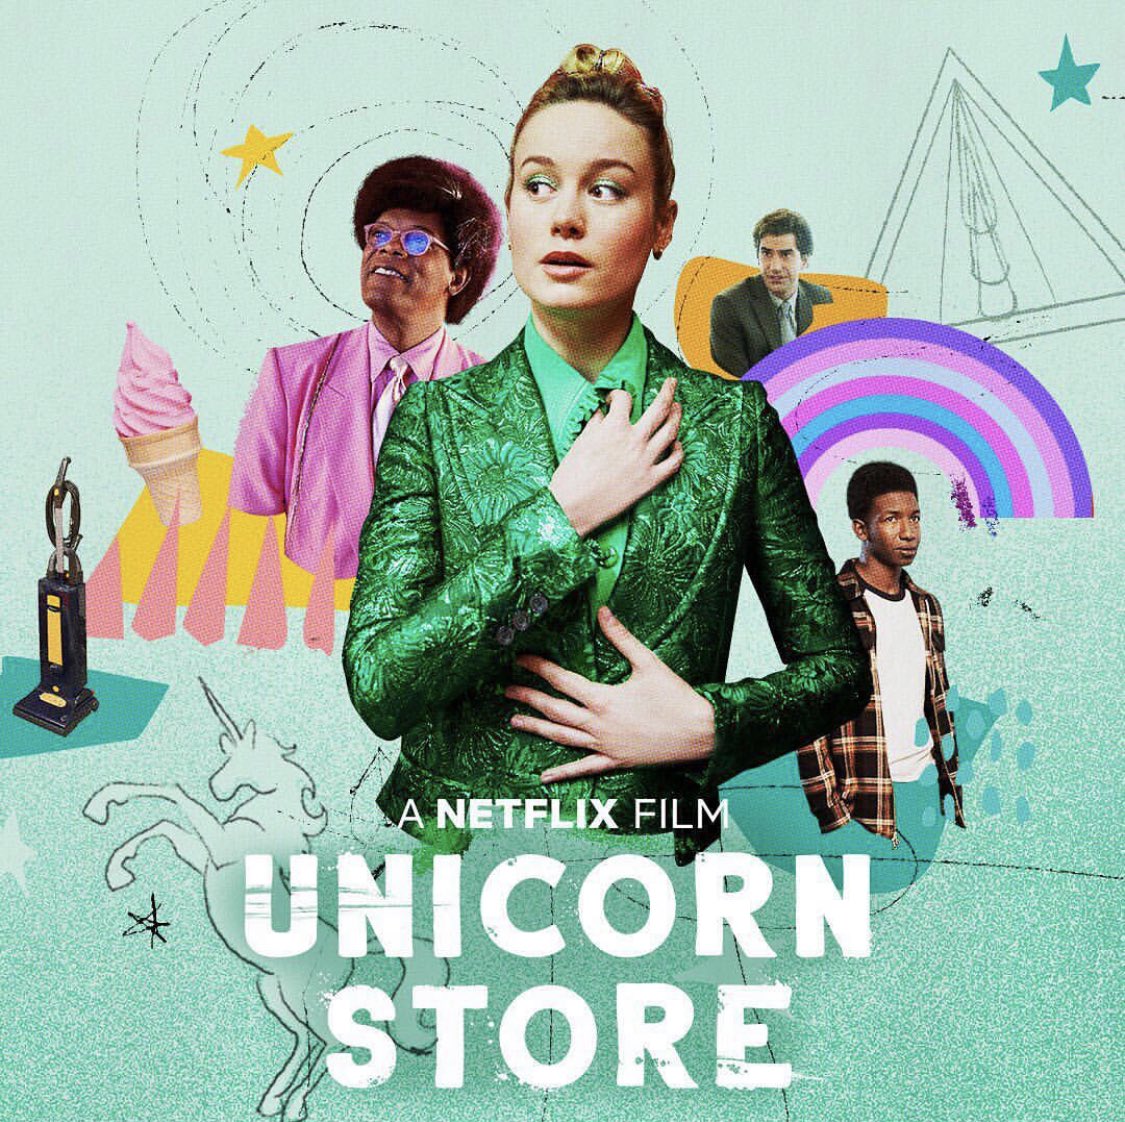 Unicorn Store, une fable onirique sur Netflix